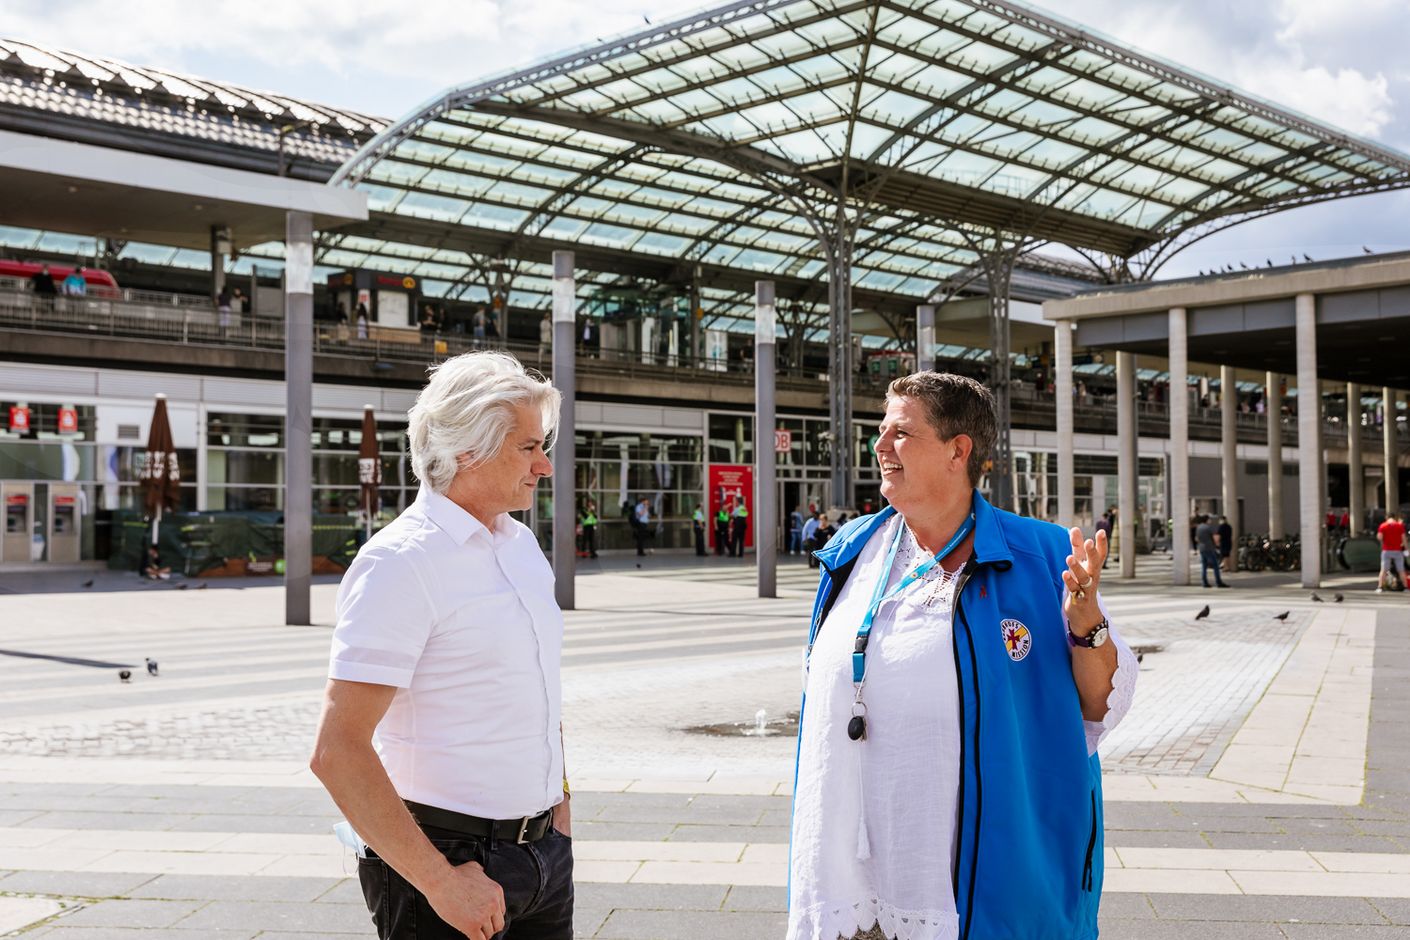 Positives Gespräch und beste Stimmung: Corinna Rindle und Michael Vogel stehen am Ende ihres Treffens gut gelaunt auf dem Breslauer Platz, dem Hinterausgang des Kölner Hauptbahnhofs.